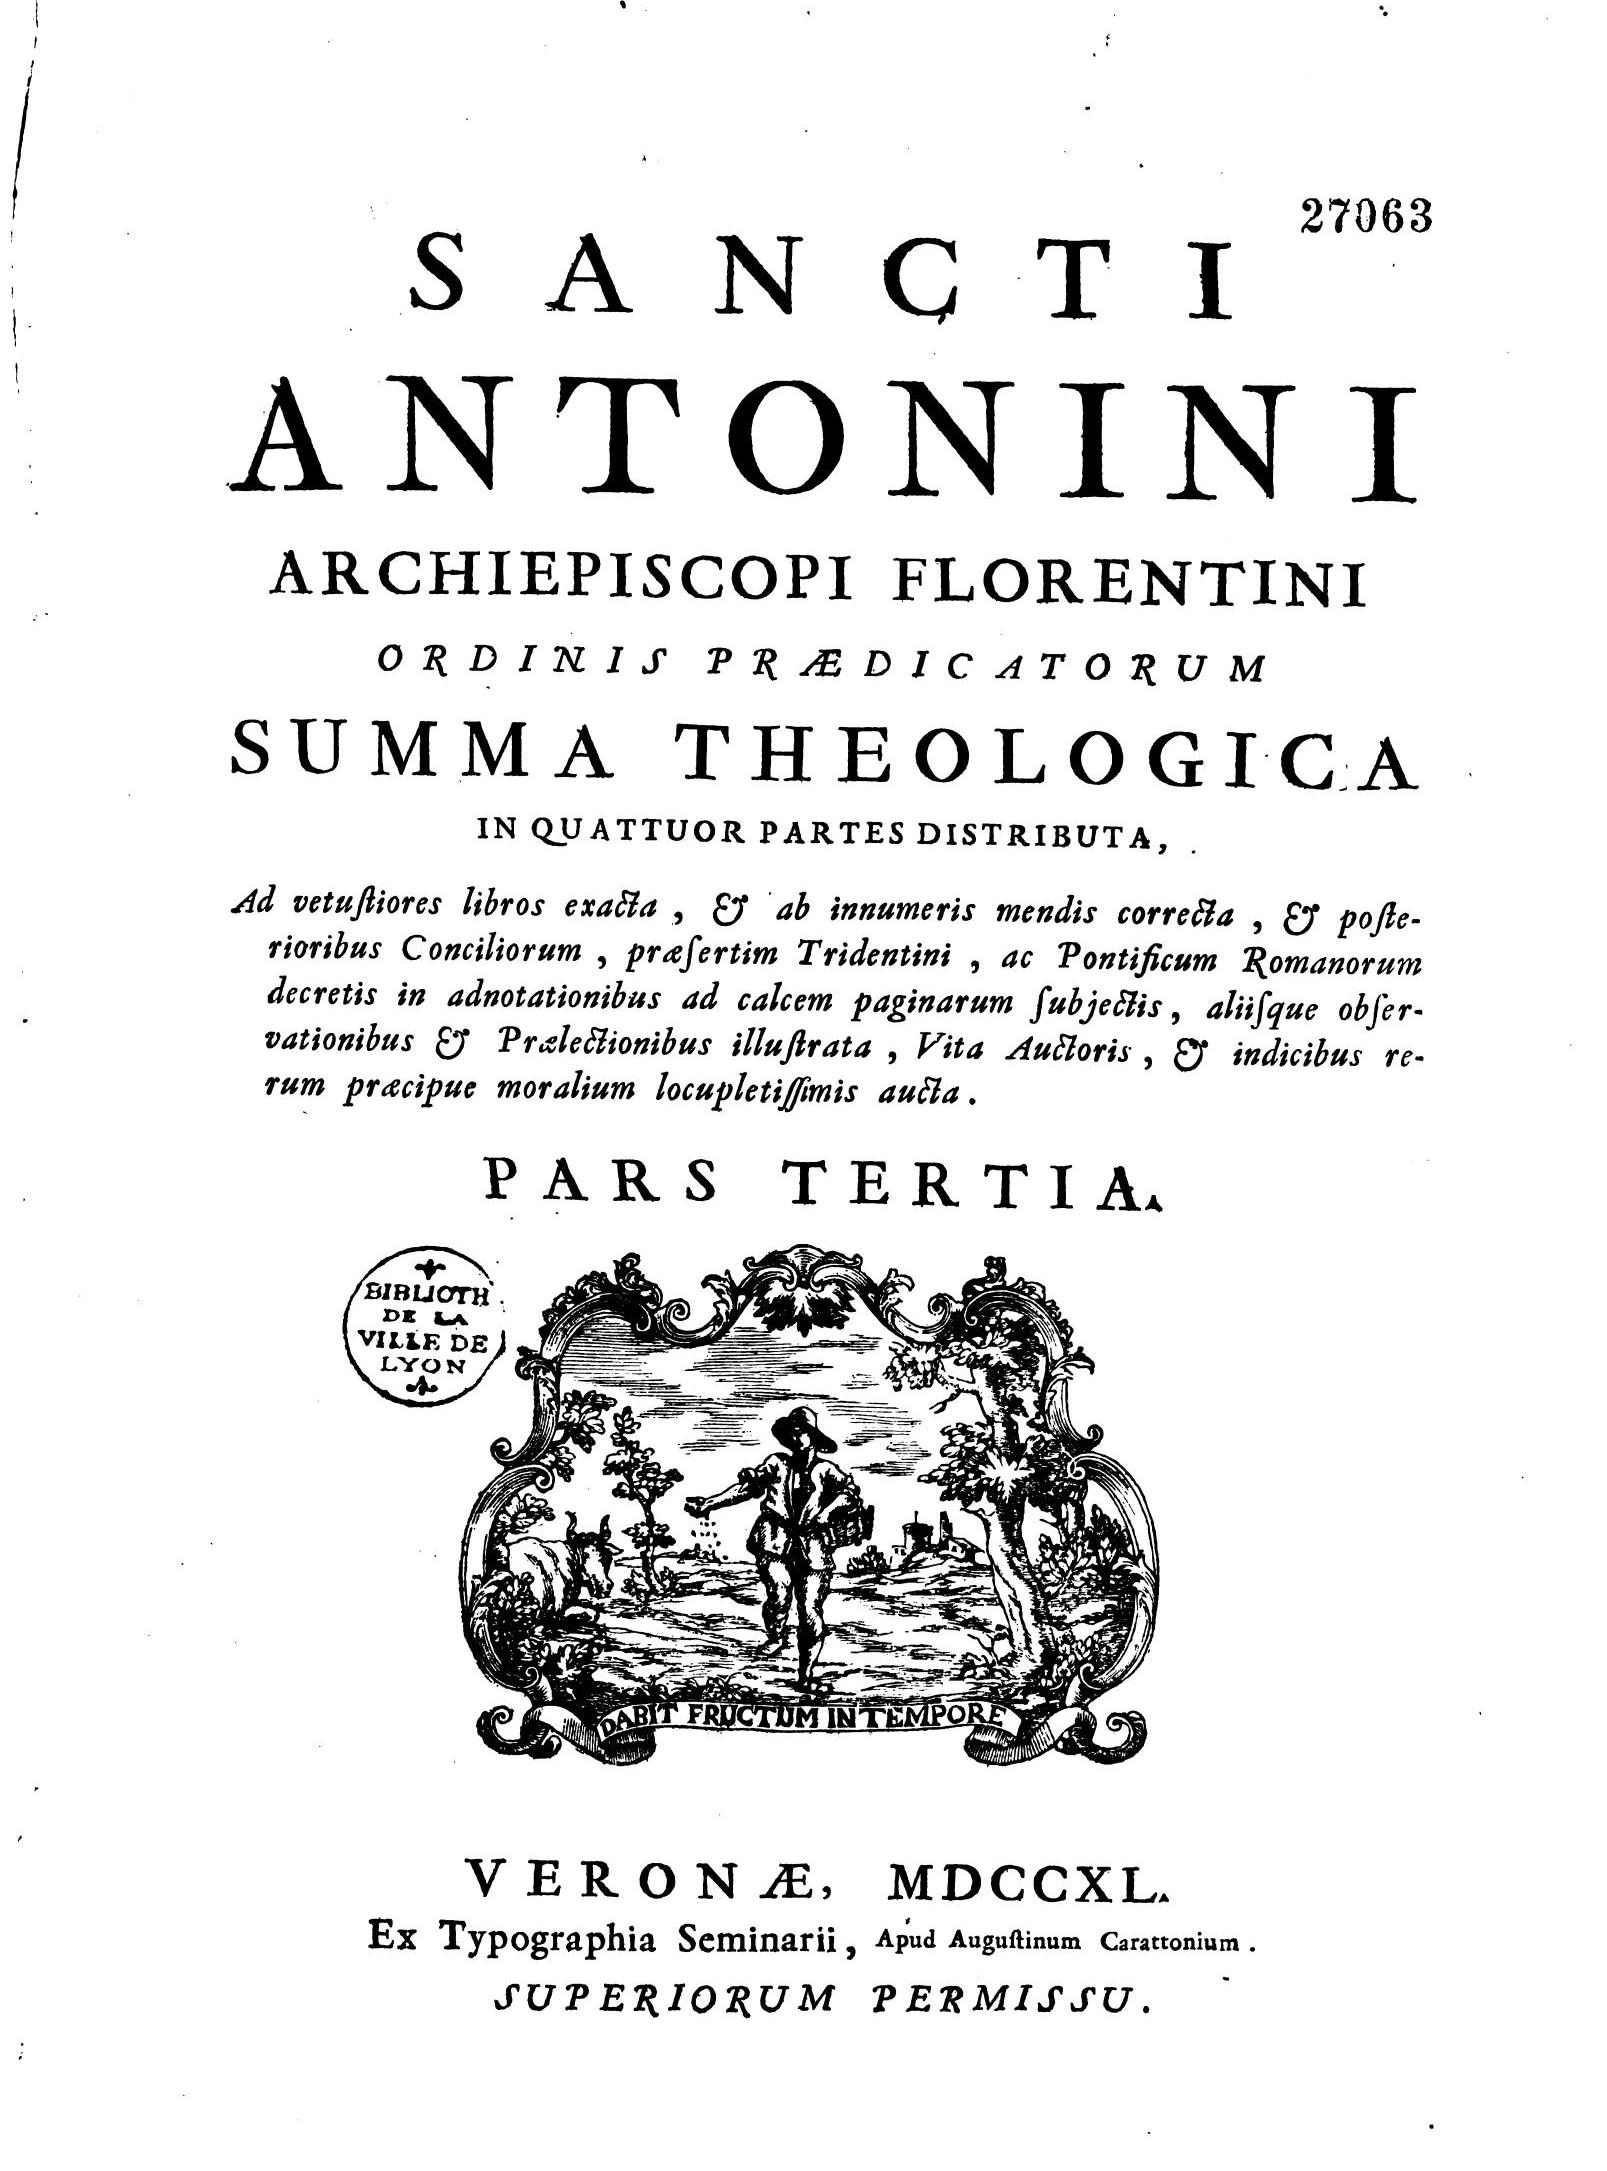 Sancti Antonini Archiepiscopi Florentini, Ordinis Praedicatorum, Summa Theologica. Pars tertia.